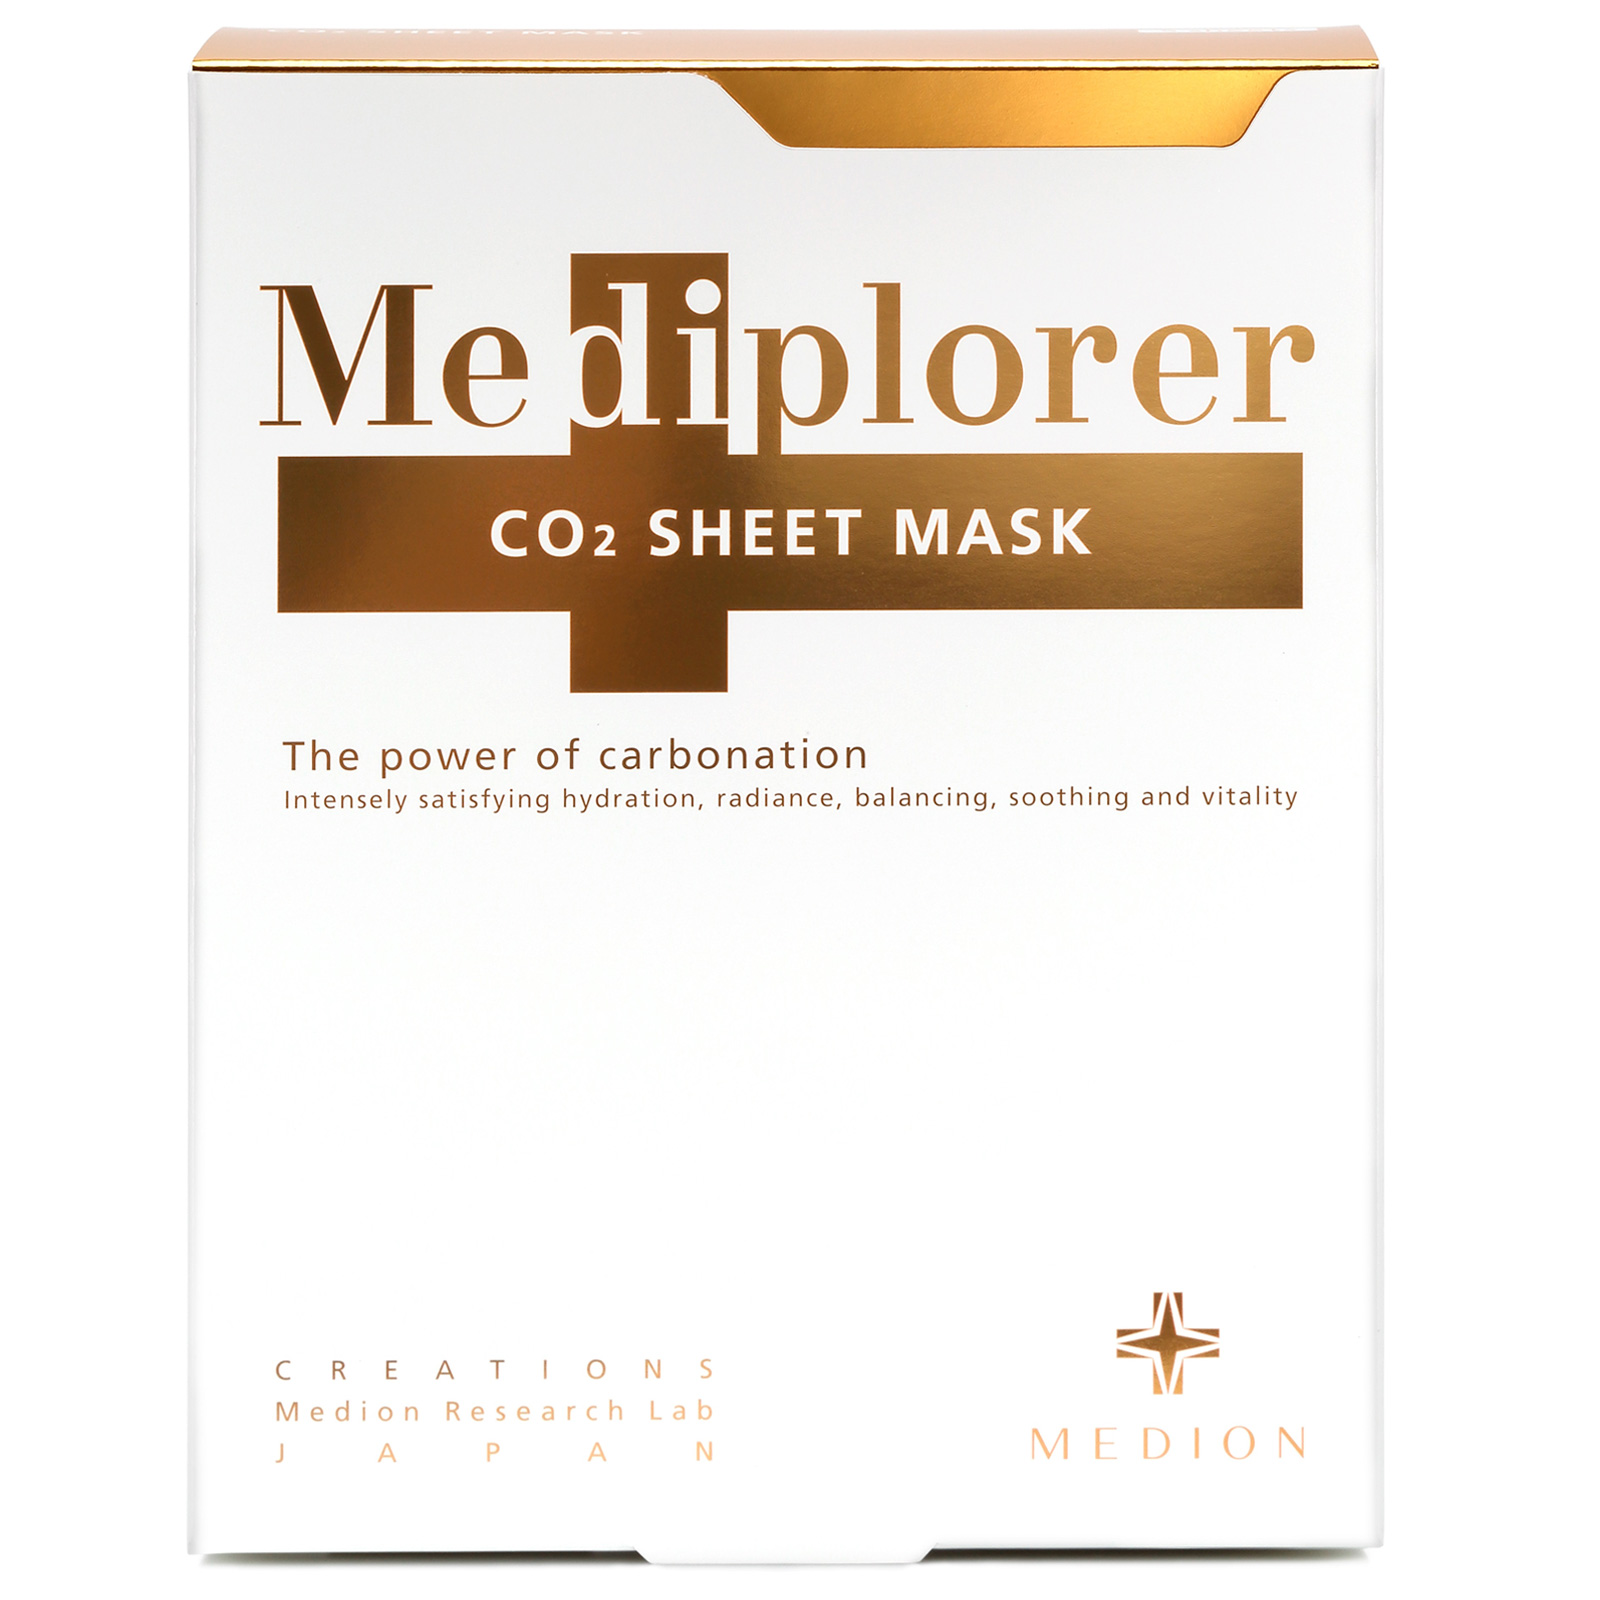 Mediplorer CO2 Sheet Mask. Тканевая маска для лица СО2 Медиплорер, 5 шт.